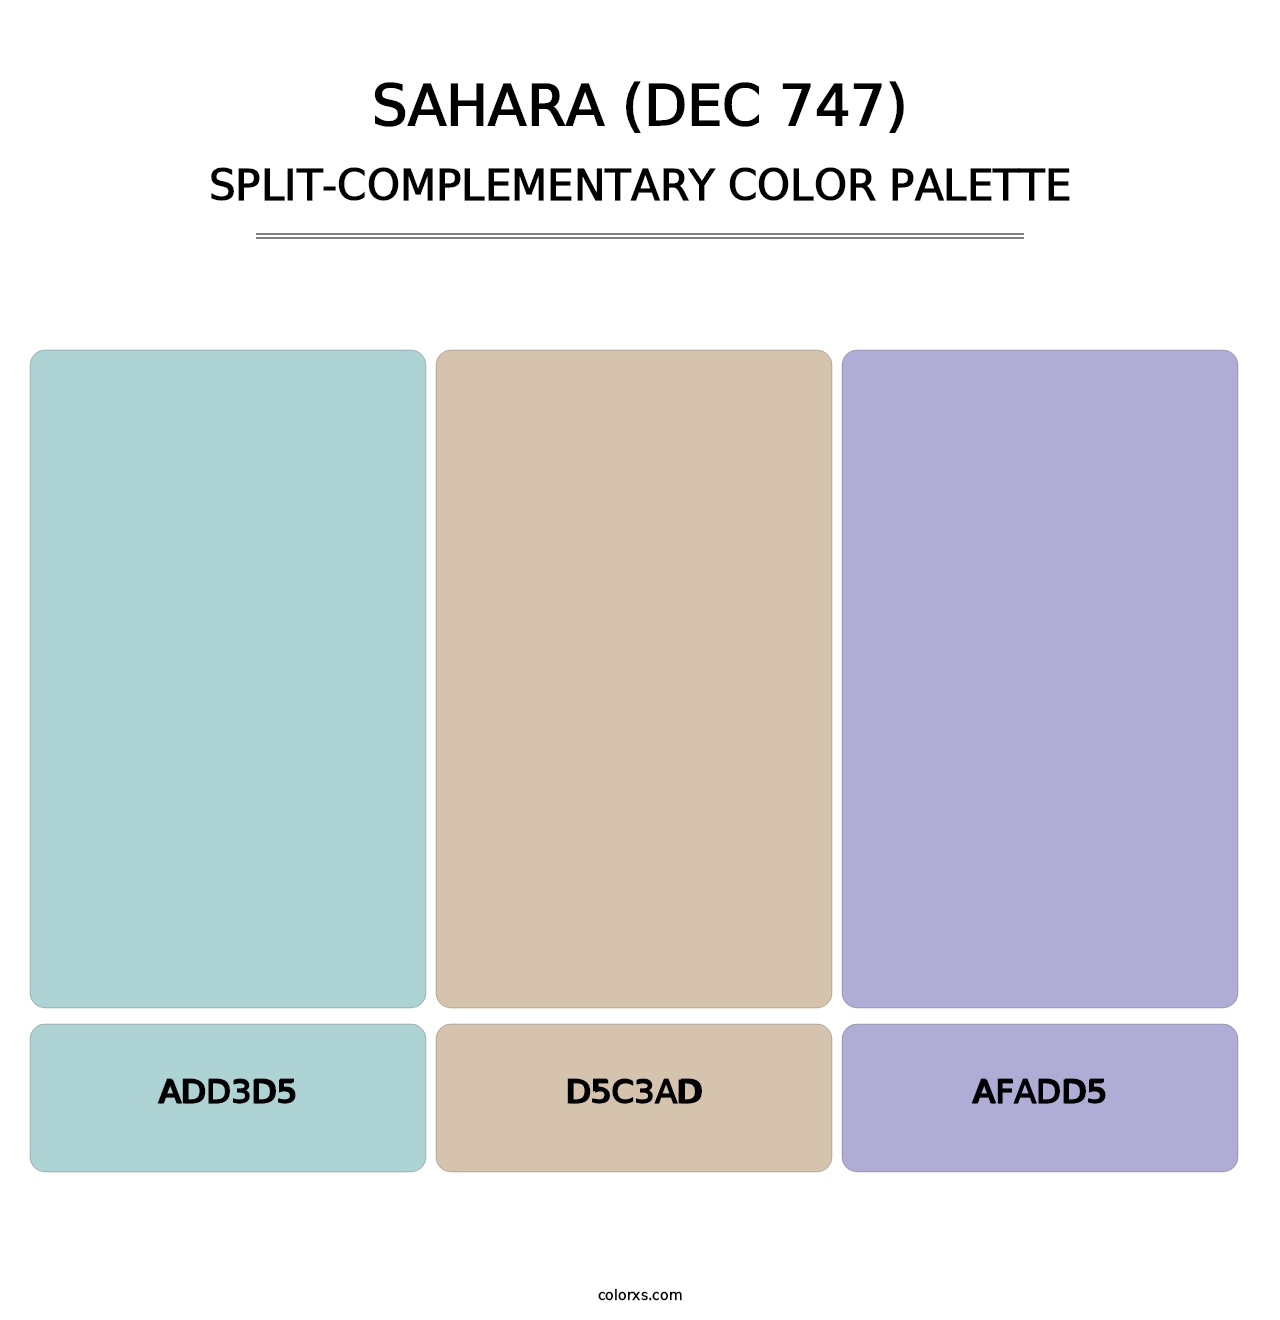 Sahara (DEC 747) - Split-Complementary Color Palette